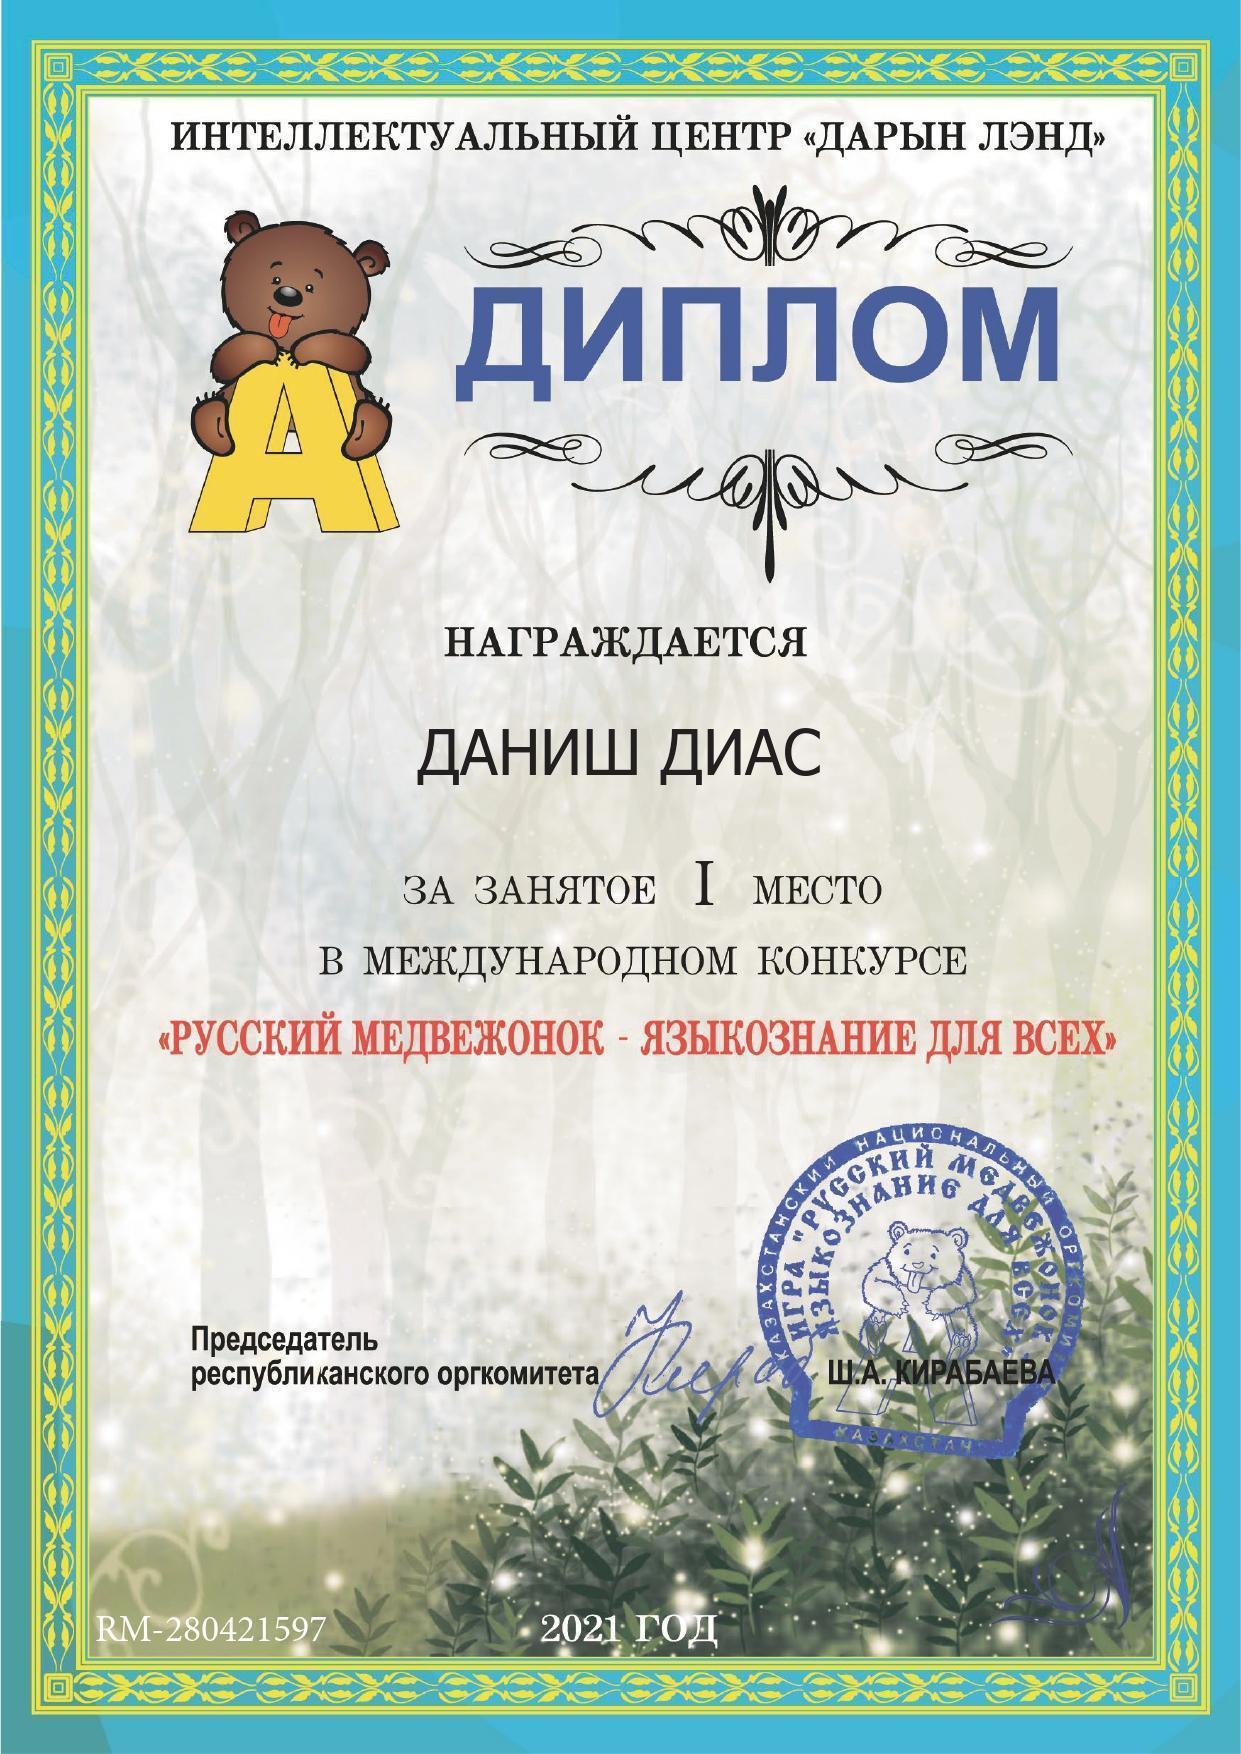 Ученик 2 "Б" класса Даниш Диас  занял І место в международном конкурсе "Русский медвежонок-языкознание для всех"